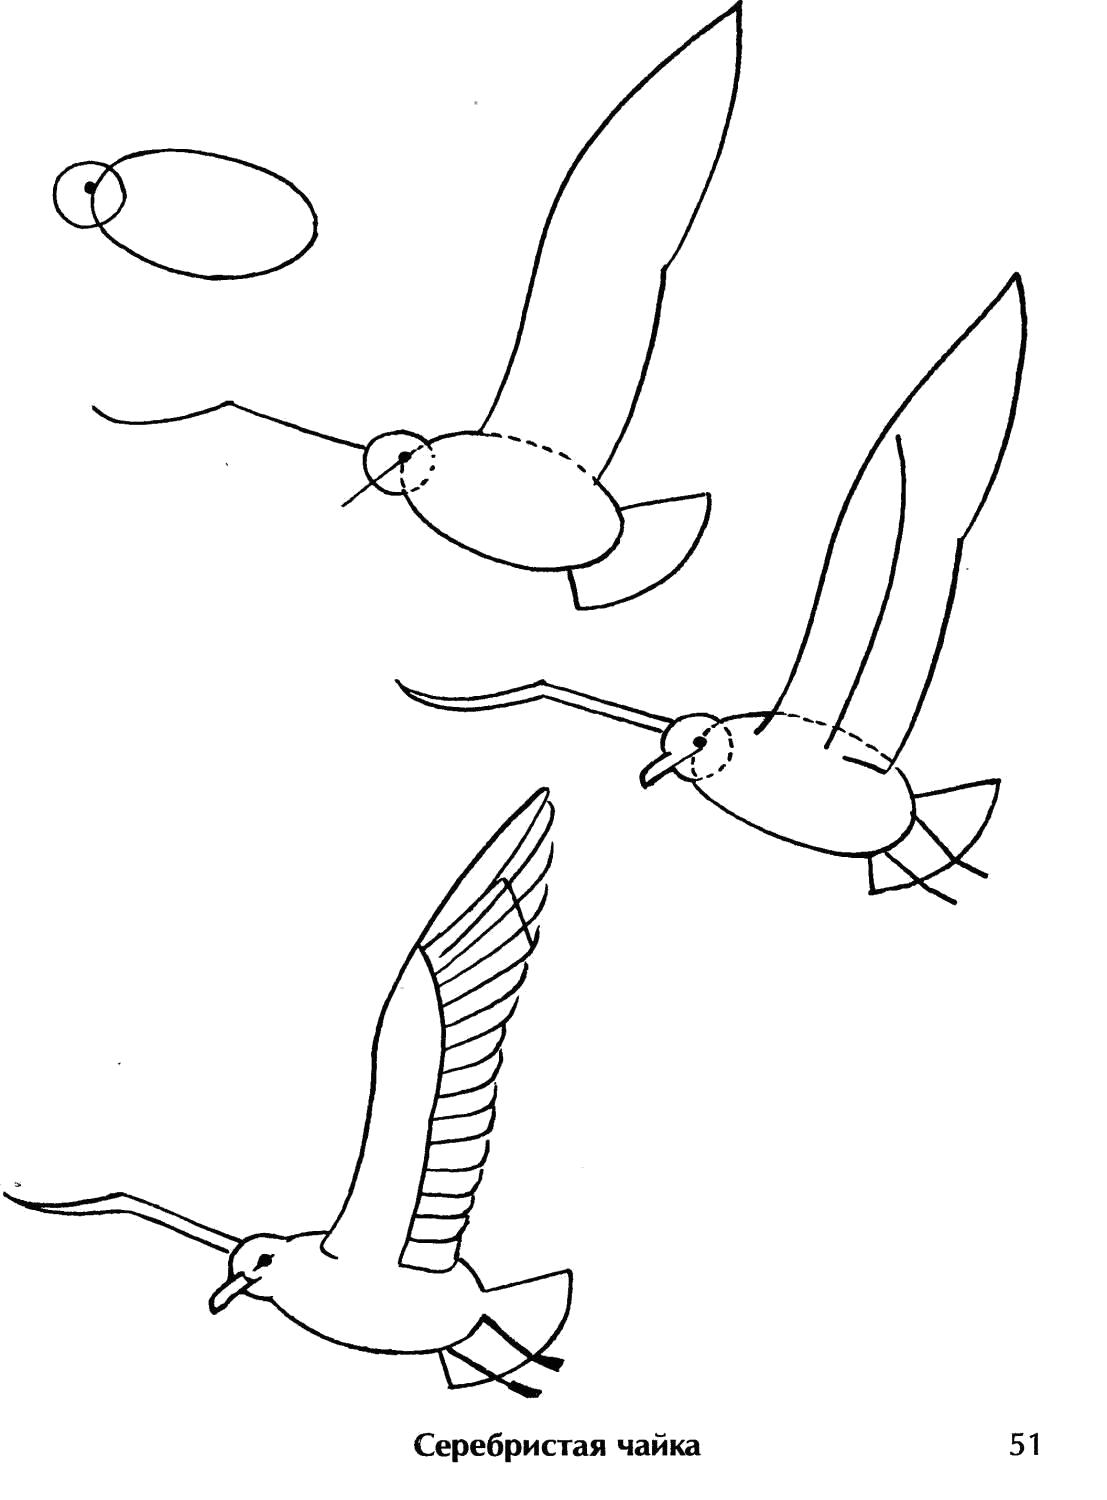 Как нарисовать сказку про Рыбака и Золотую Рыбку карандашом поэтапно? Как нарисовать рыбу поэтапно